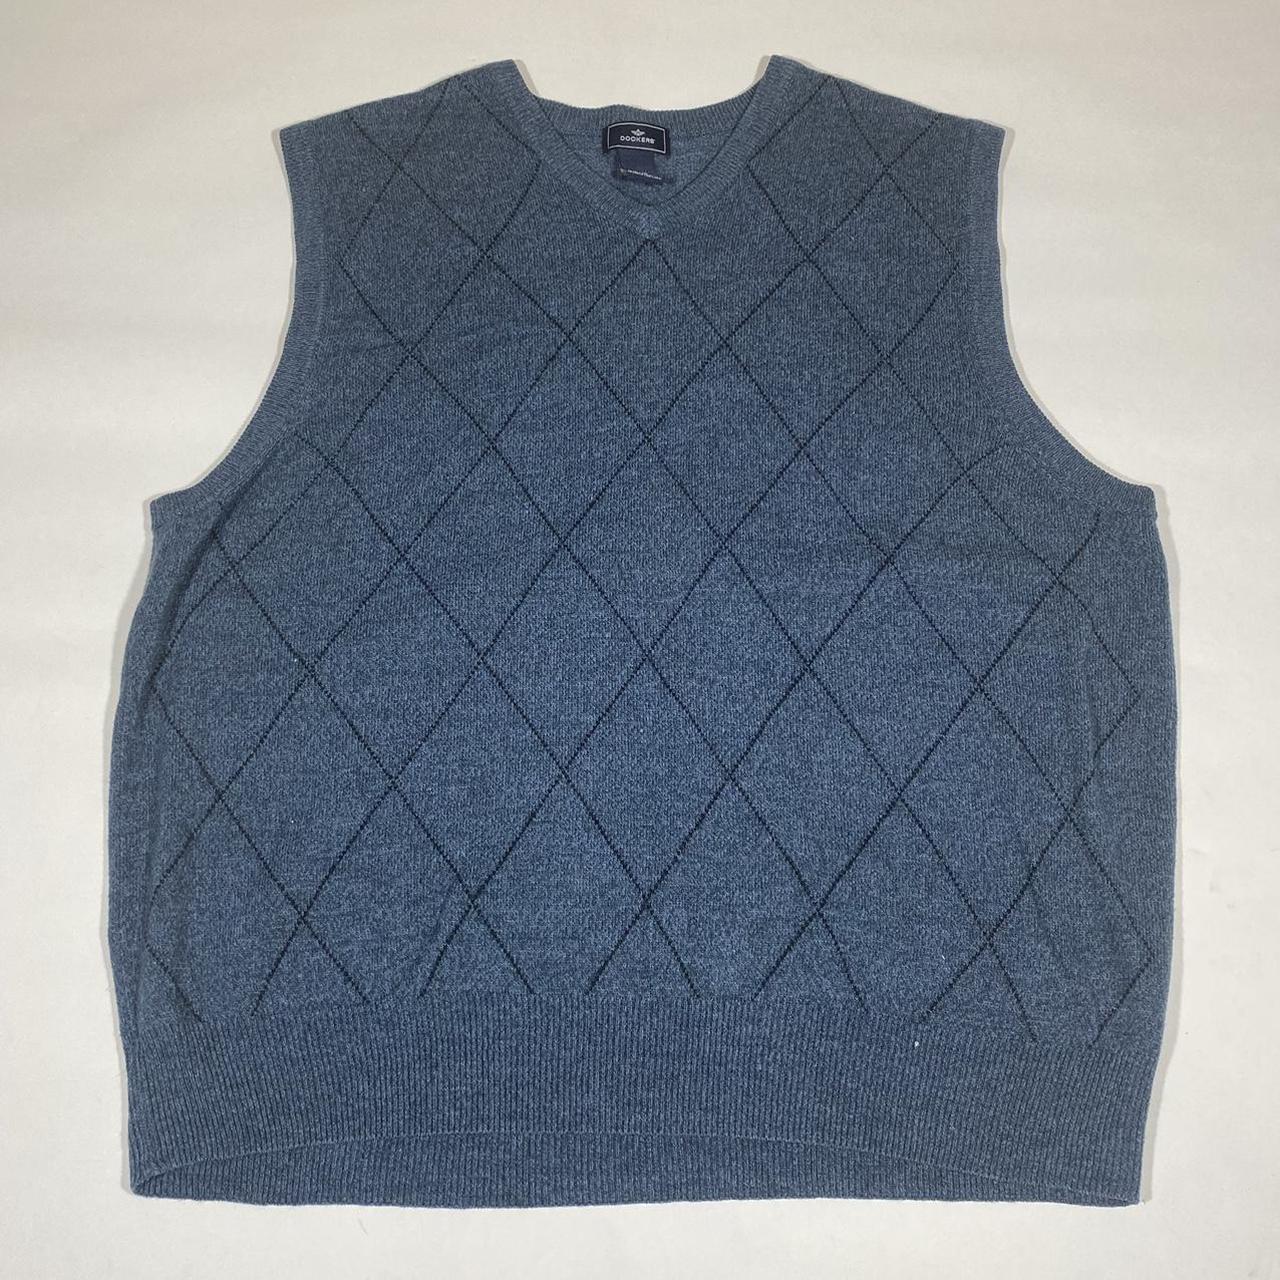 Product Image 1 - Vintage 90s knit vest. Has